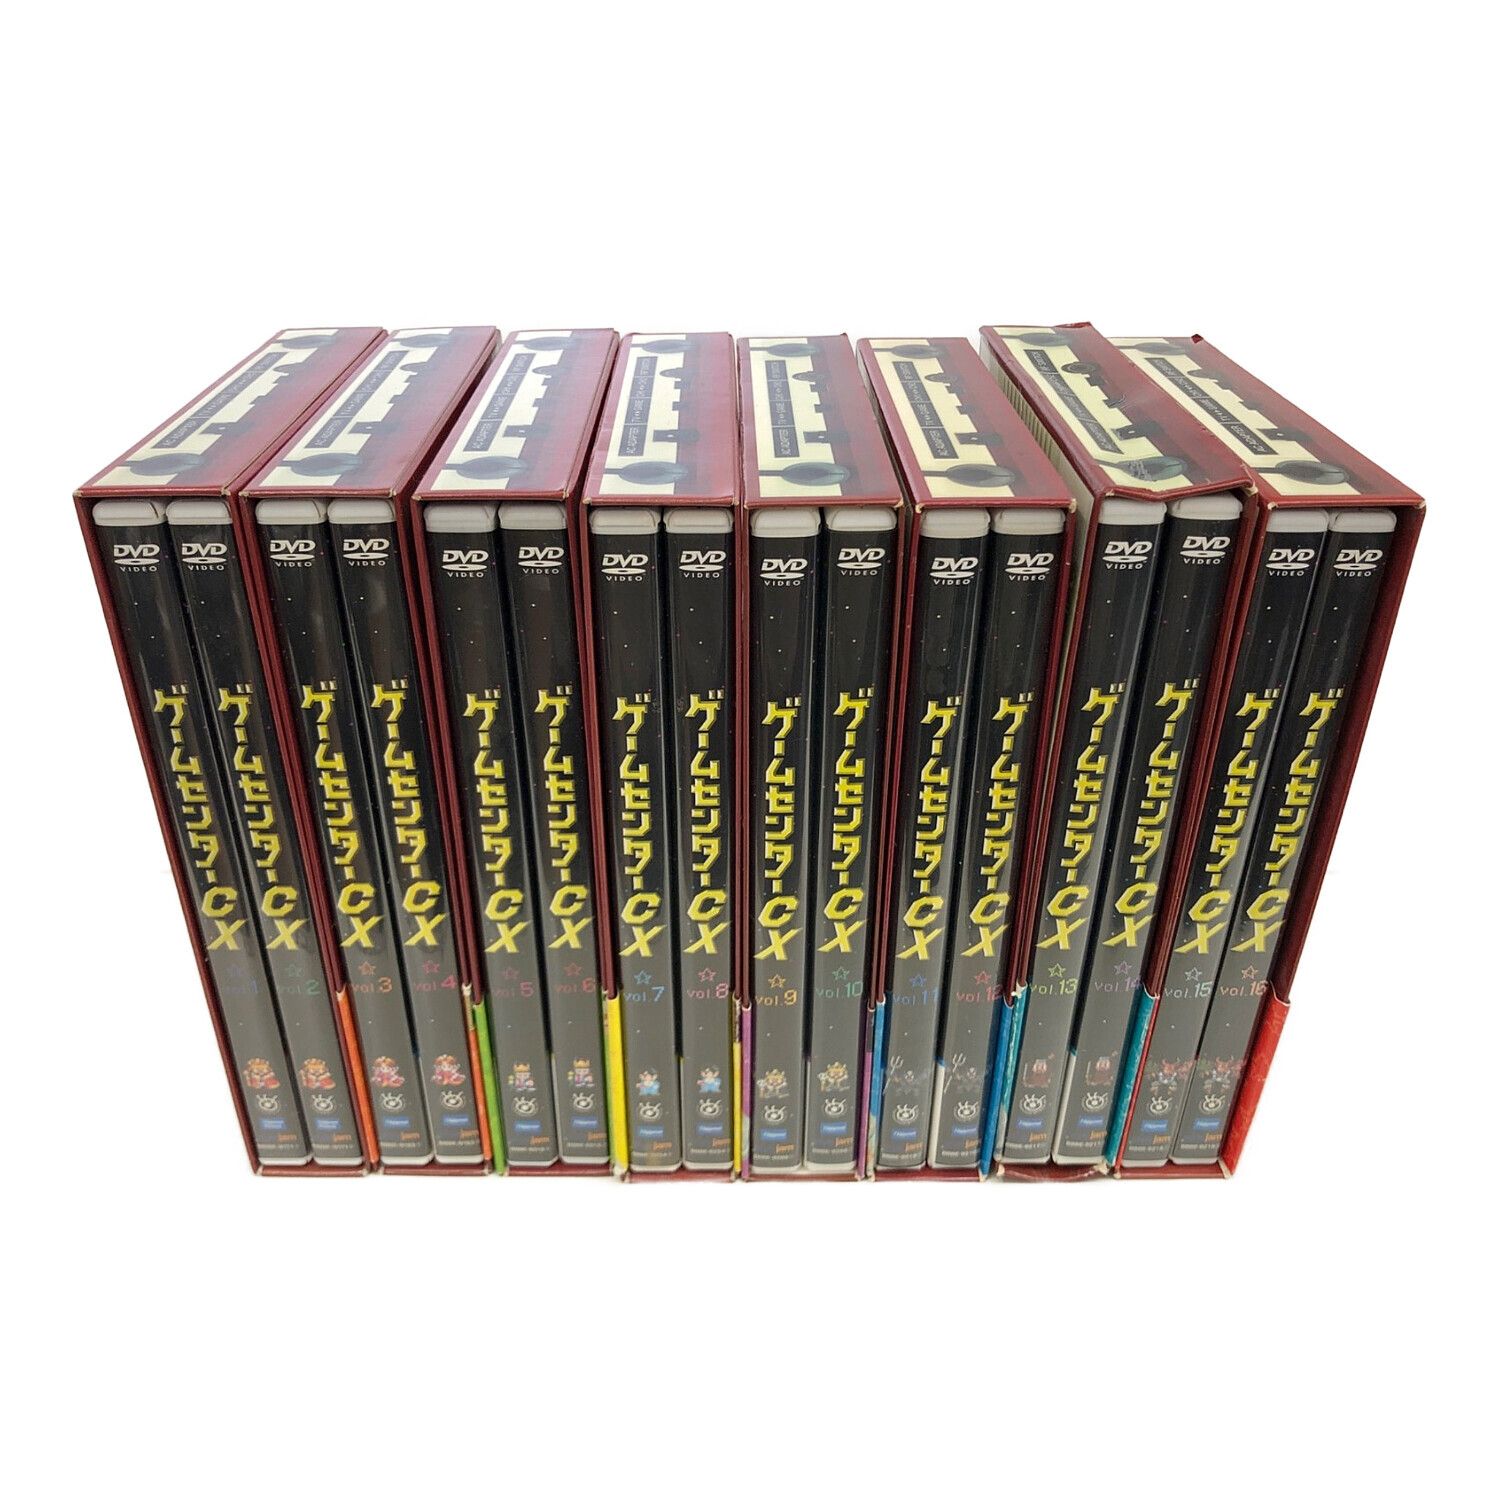 ゲームセンターcx DVDBOX 1〜8セット - www.sorbillomenu.com